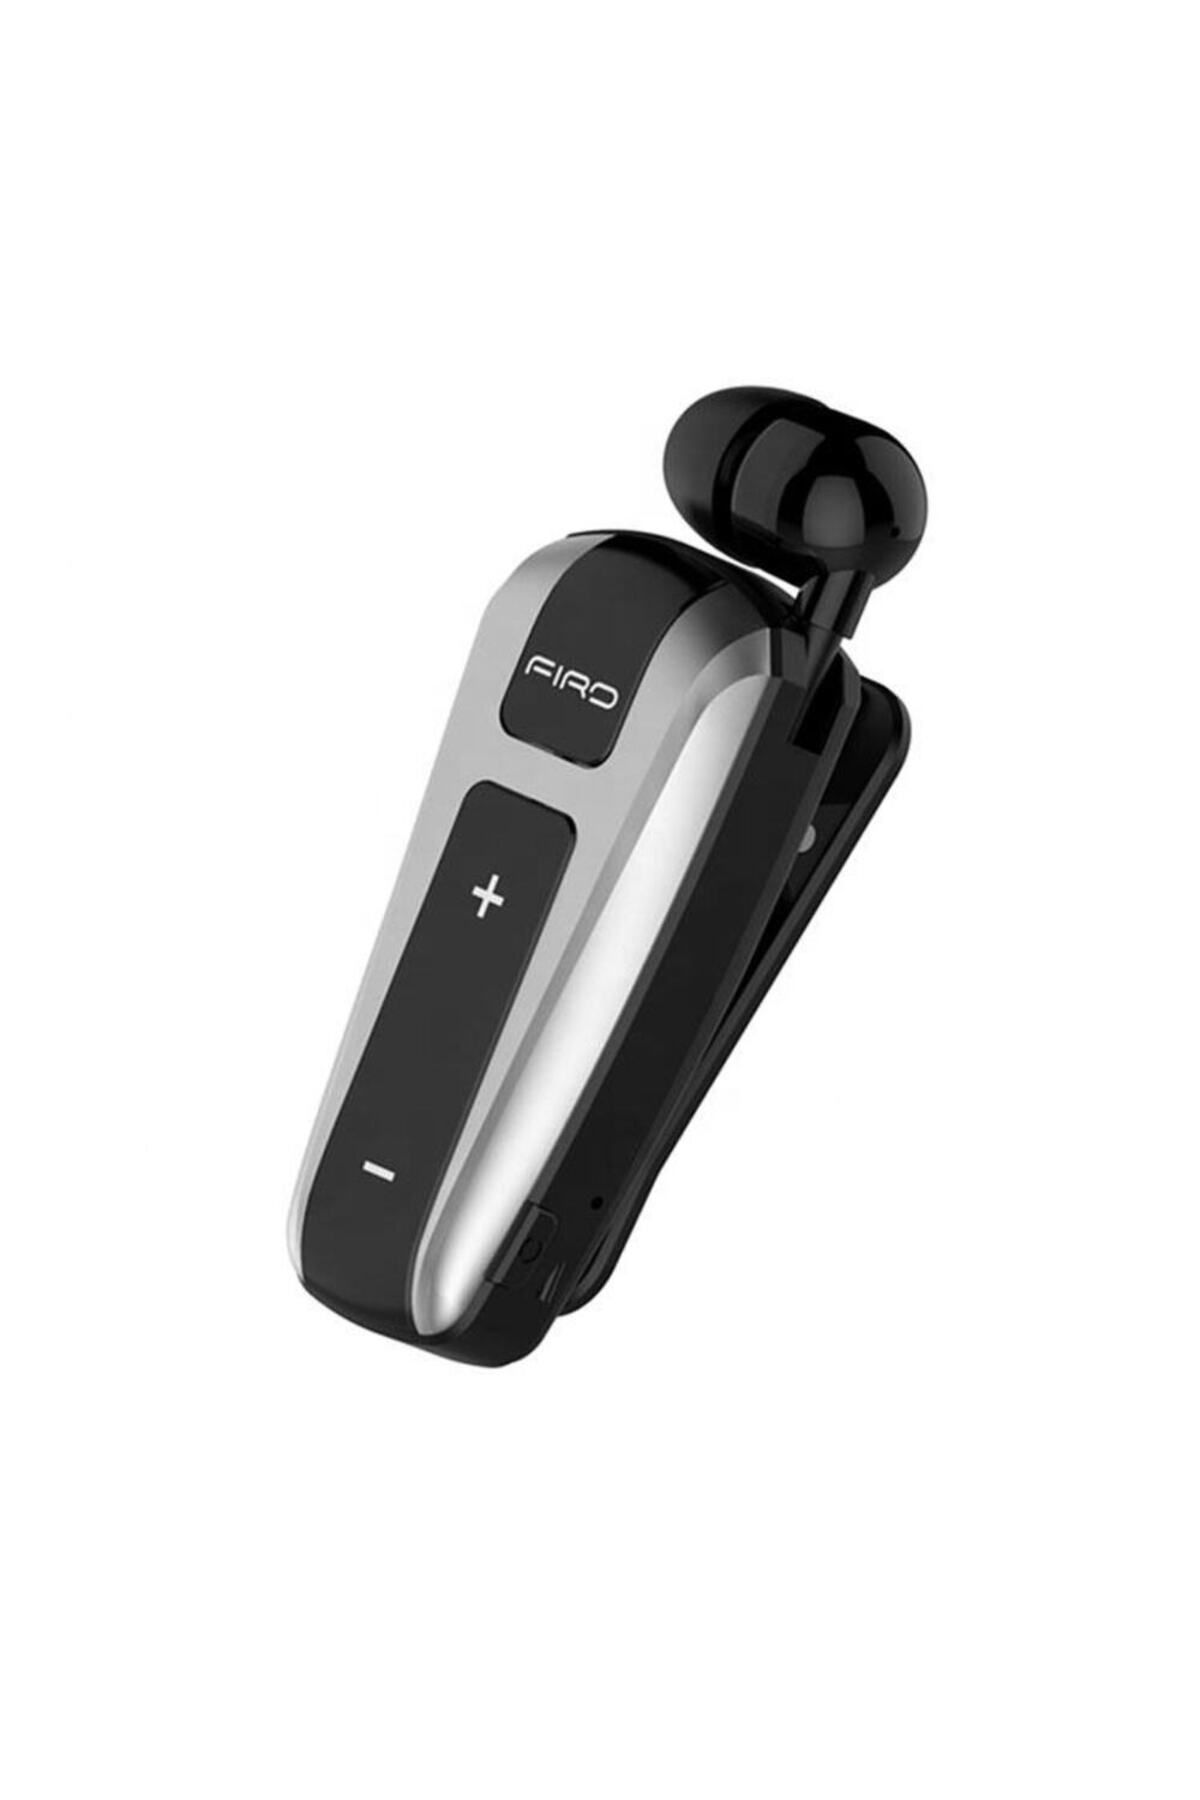 WASHA Makaralı Bluetooth Kulaklık Titreşimli Iki Telefona Aynı Anda Bağlantı